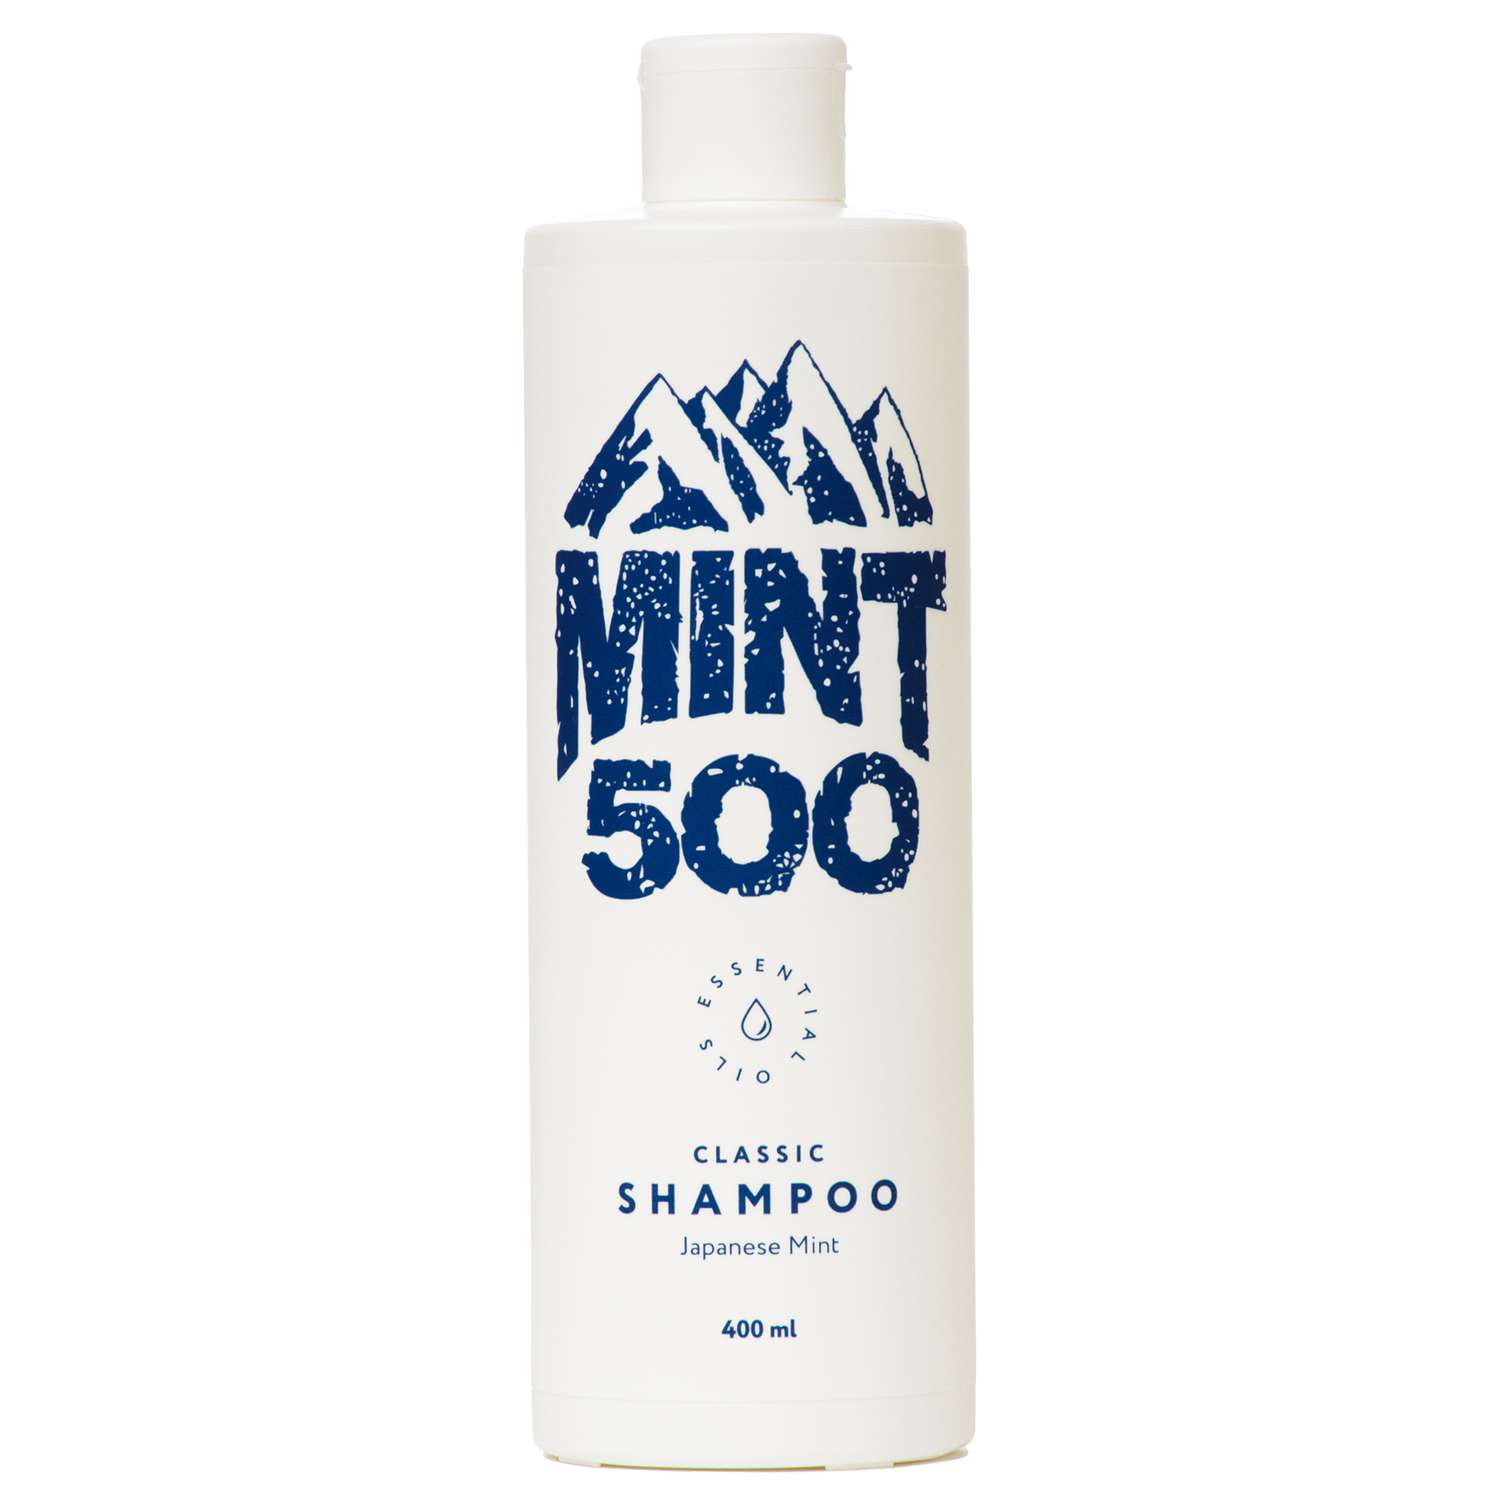 Шампунь Mint500 классический шампунь 400 мл - фото 1